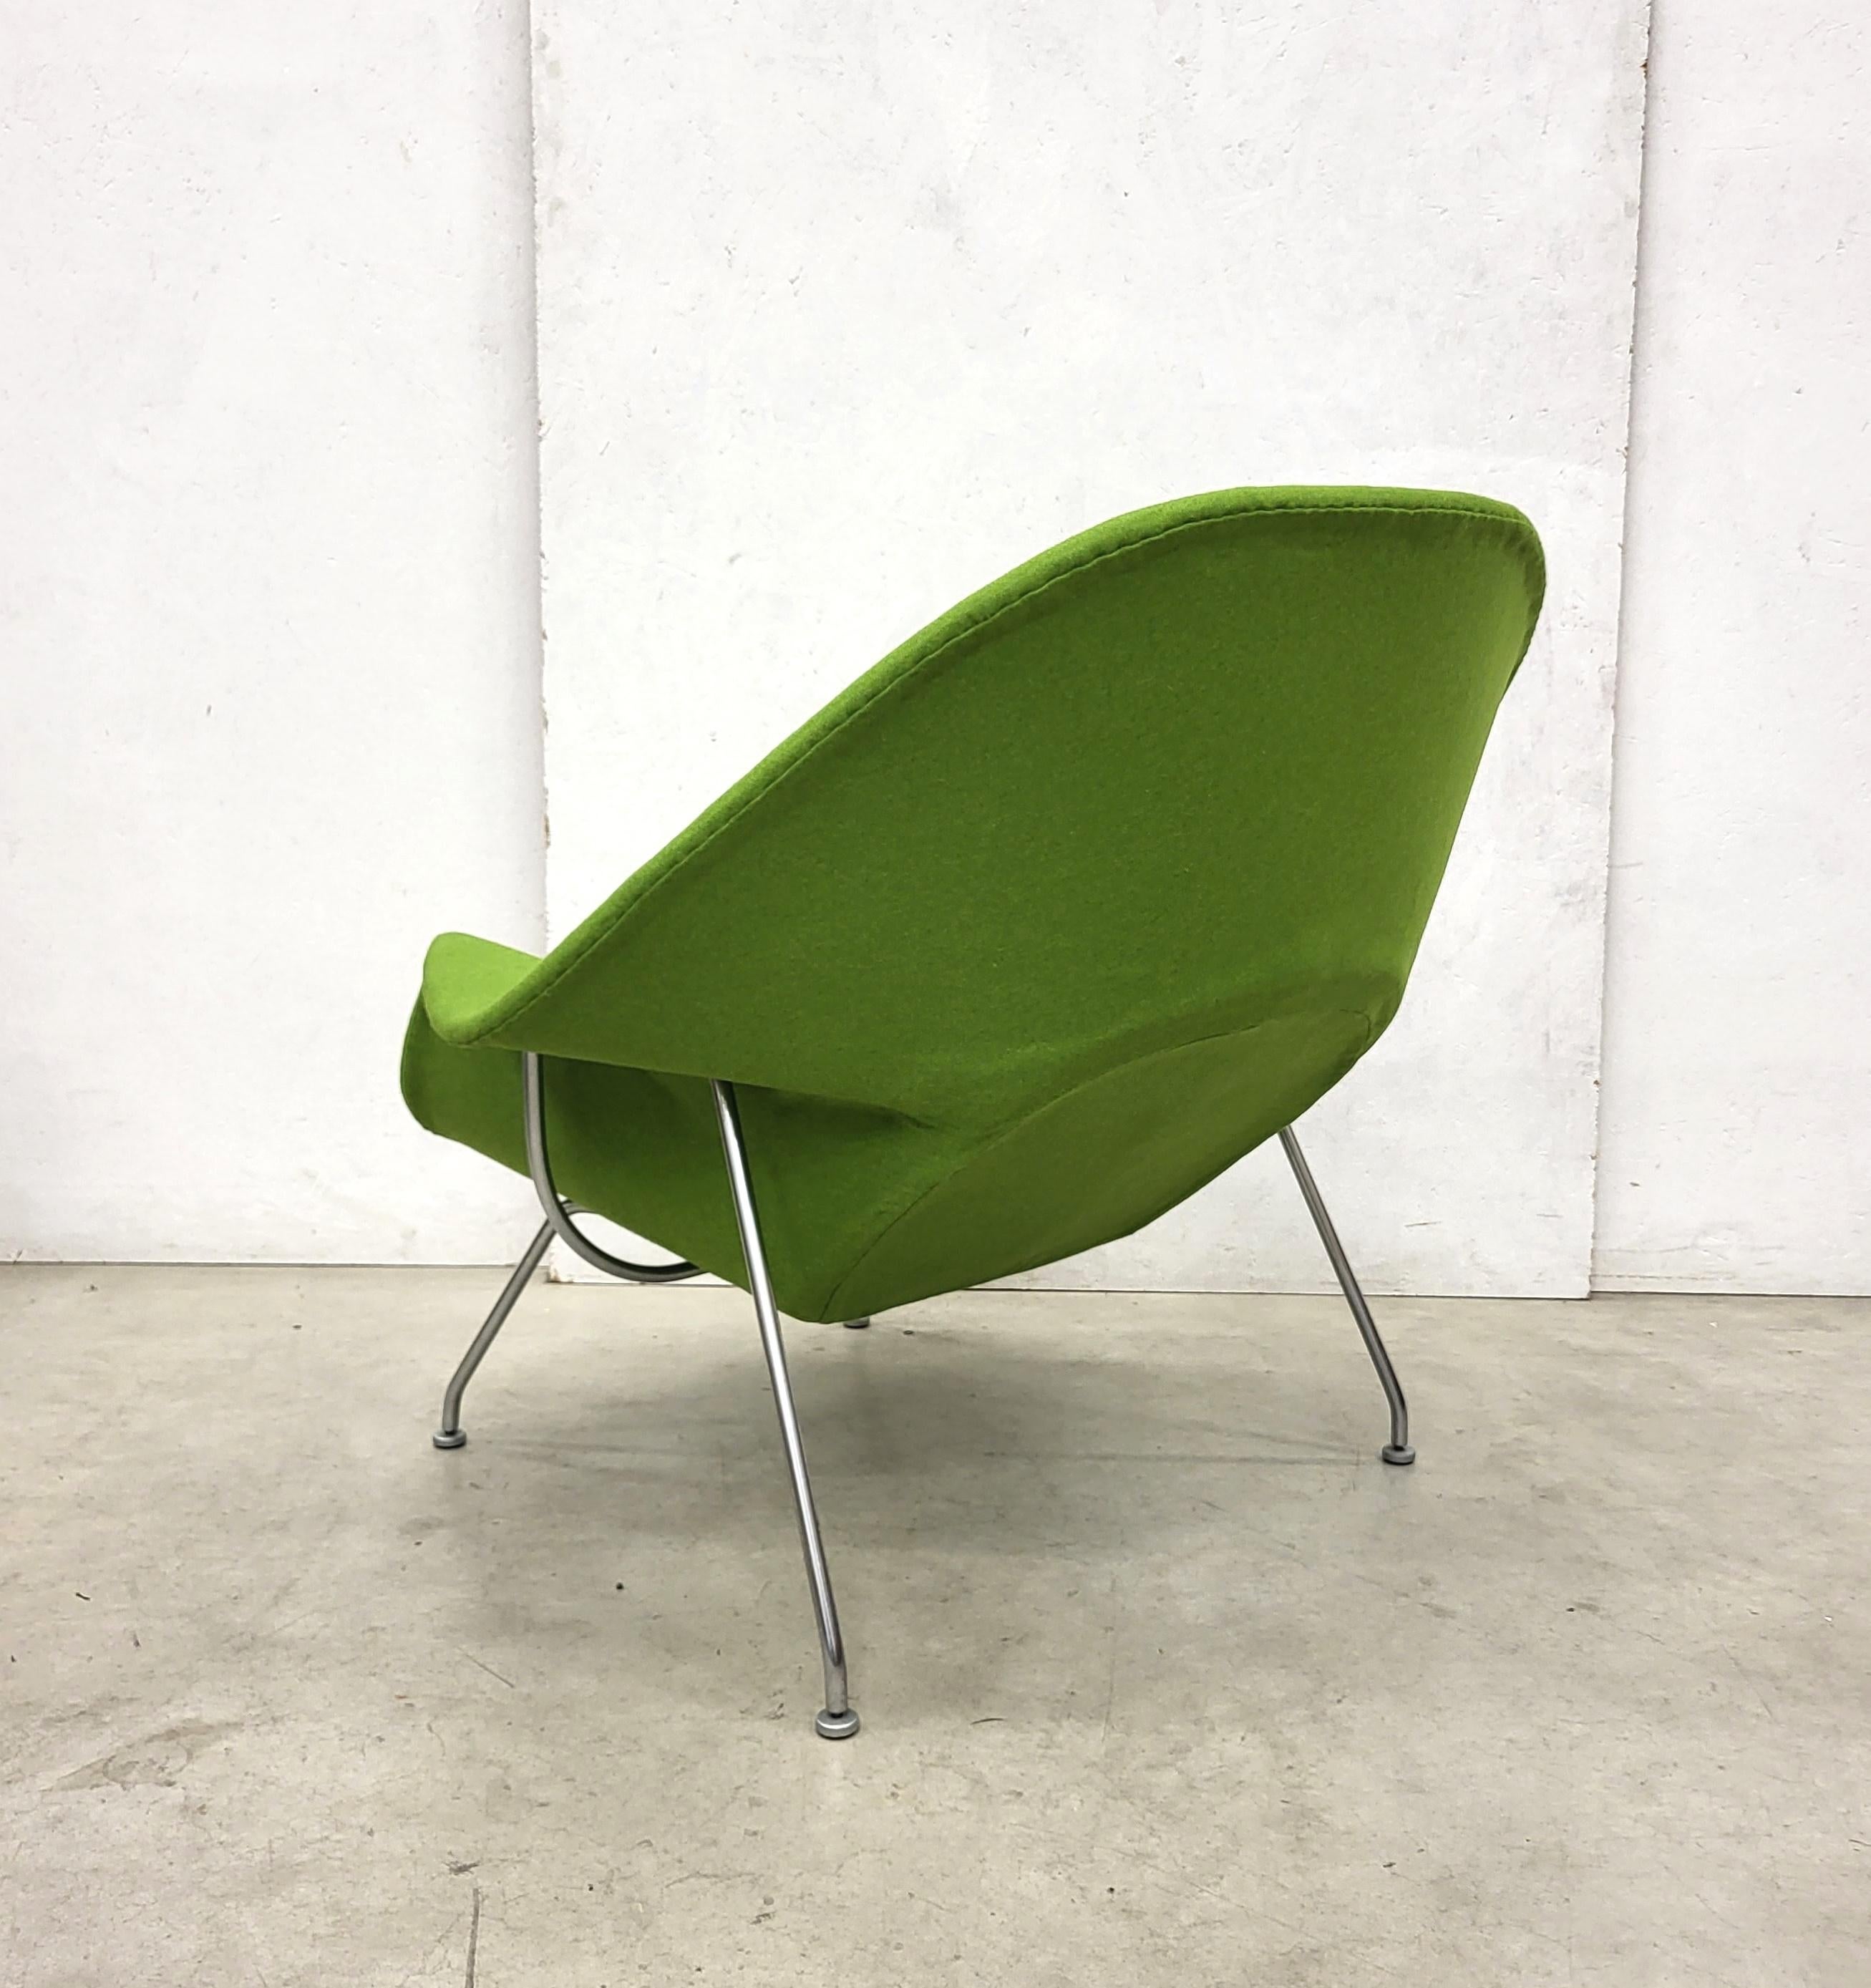 Womb Chair & Ottomane aus Holzgrün von Eero Saarinen für Knoll, 1960er Jahre (20. Jahrhundert)